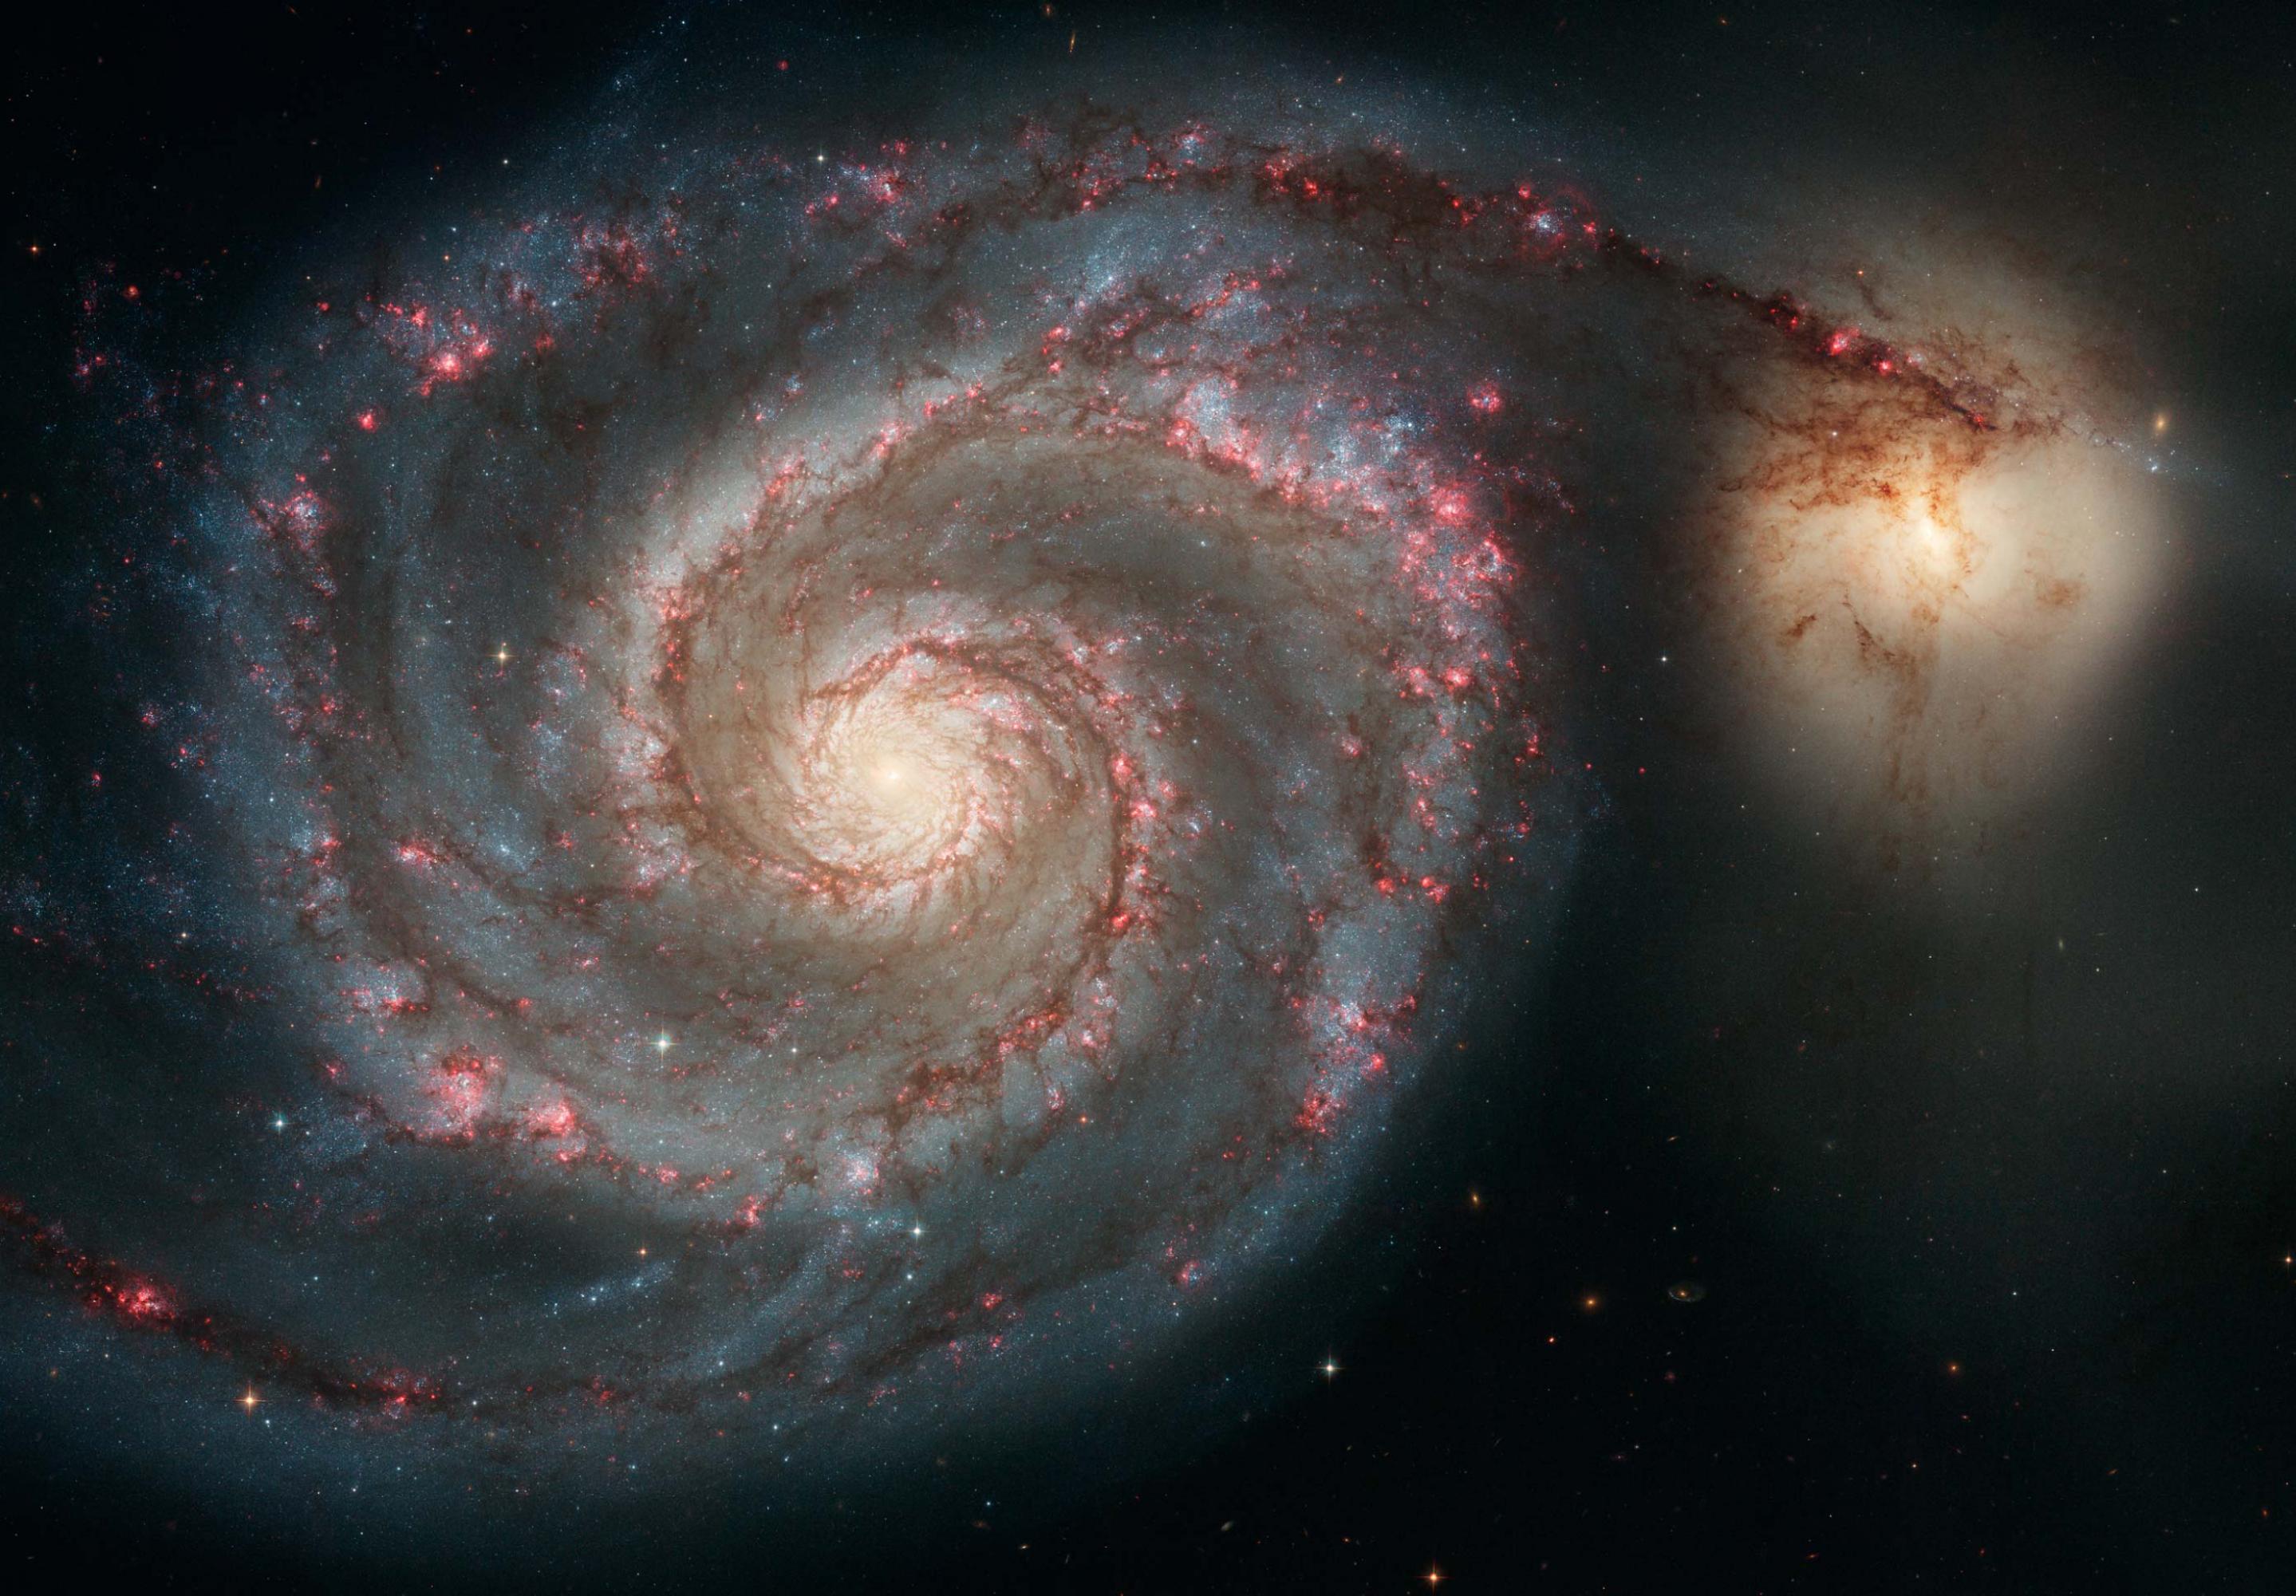 Diese Aufnahme des Hubble Space Telescope ziegt die sogenannte Whirlpool -Galaxie M51 in voller Pracht. Ein Spiralarm scheint zu einer kleineren, unregelmäßigen Nachbargalaxie, NGC 5195 überzulaufen.